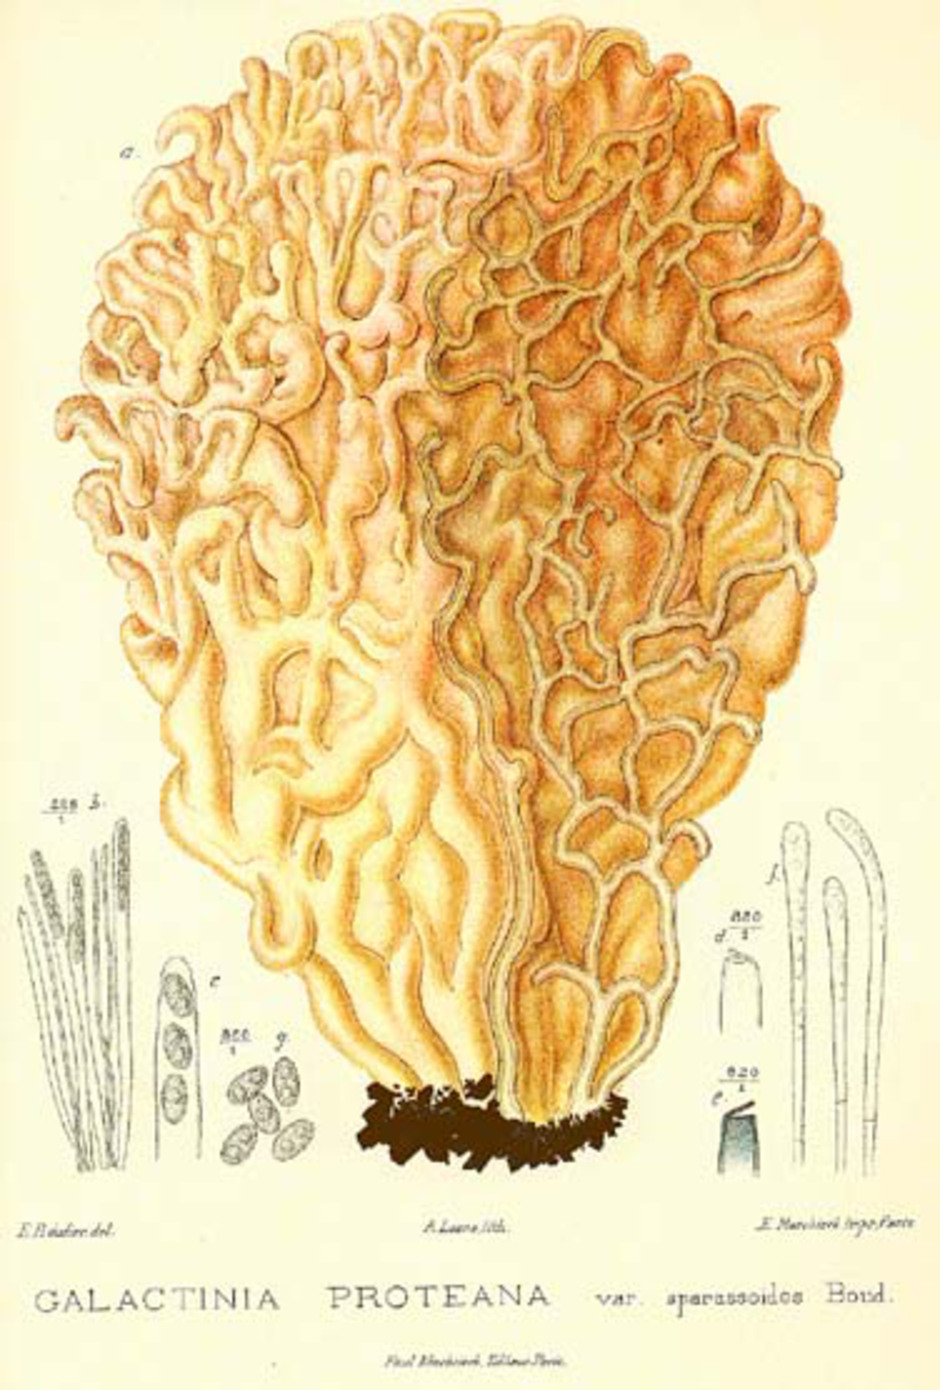 Plansch ur "Boudier, E. 1905-1910. Icones Mycologicæ ou Iconographie des champignons de France principalement discomycetes 2. Librairie des sciences naturelles, Paris."